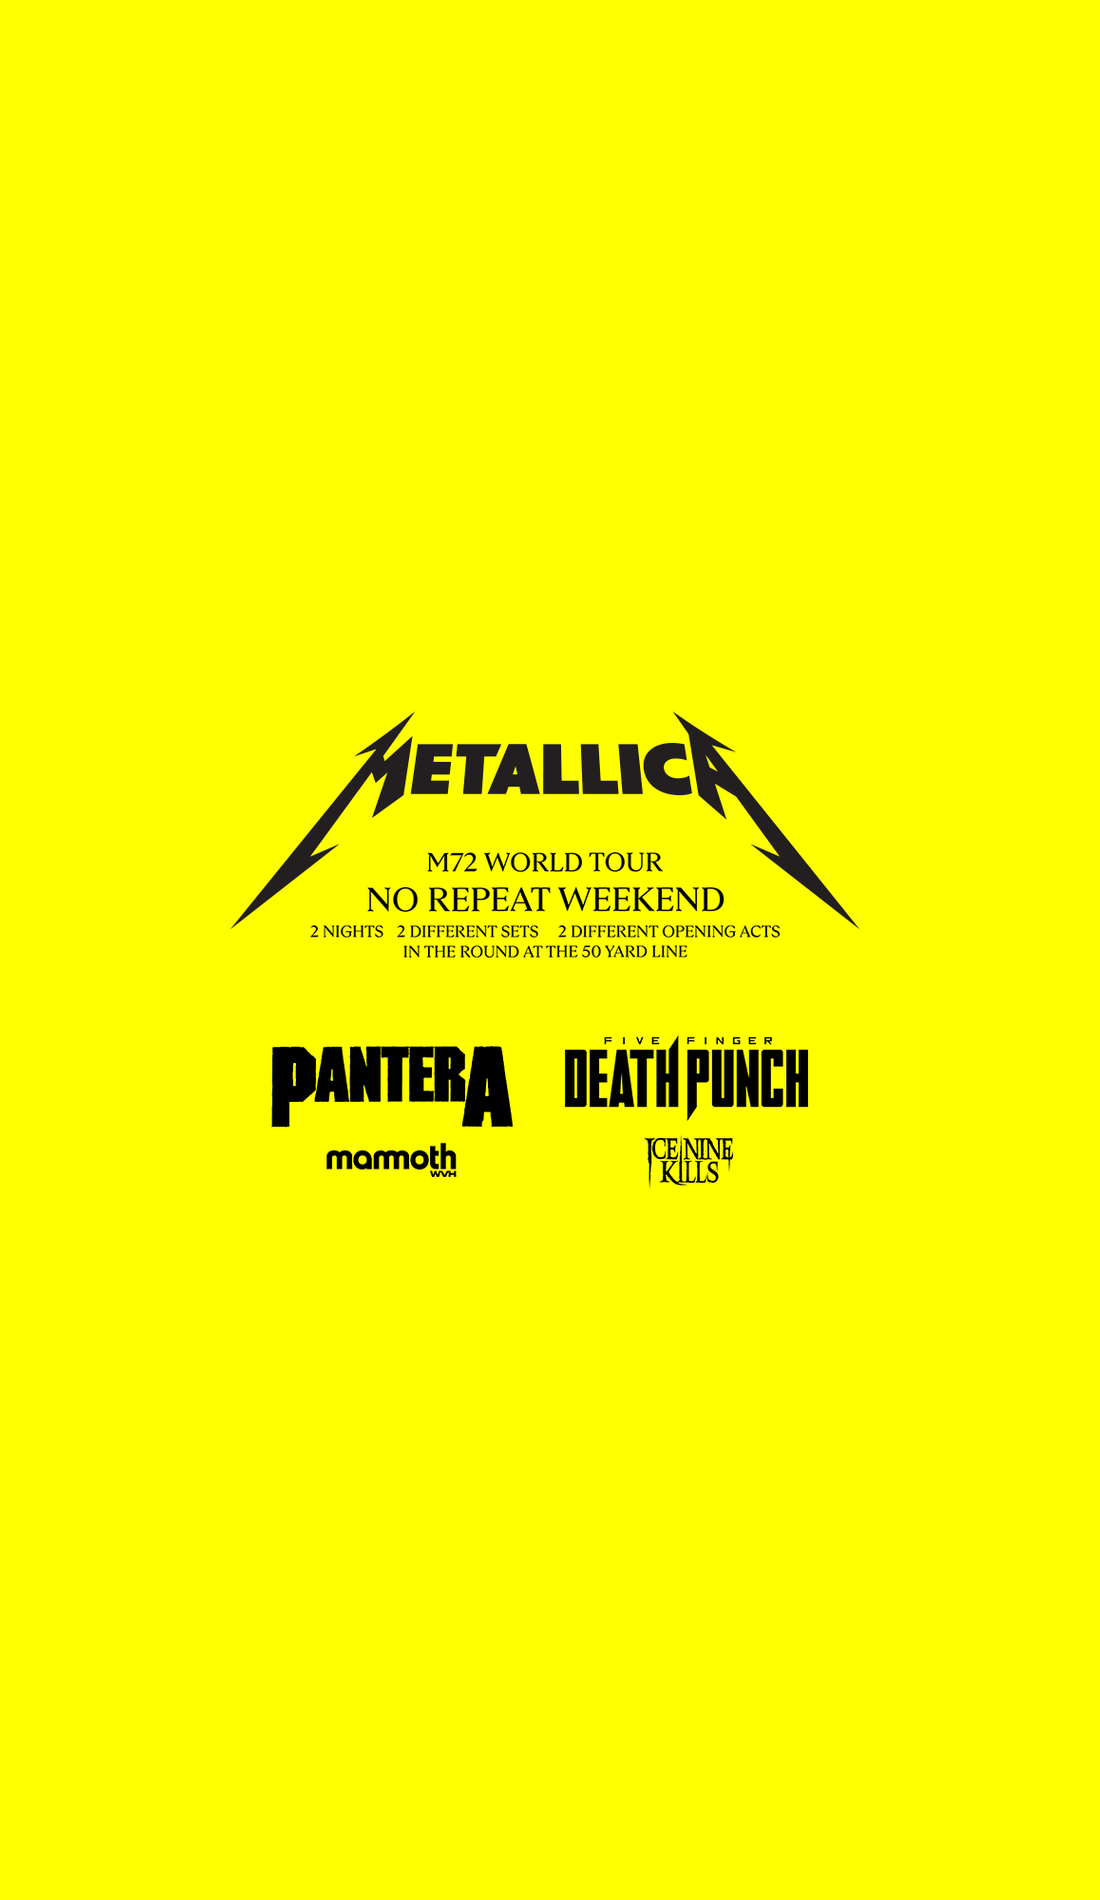 A Metallica live event